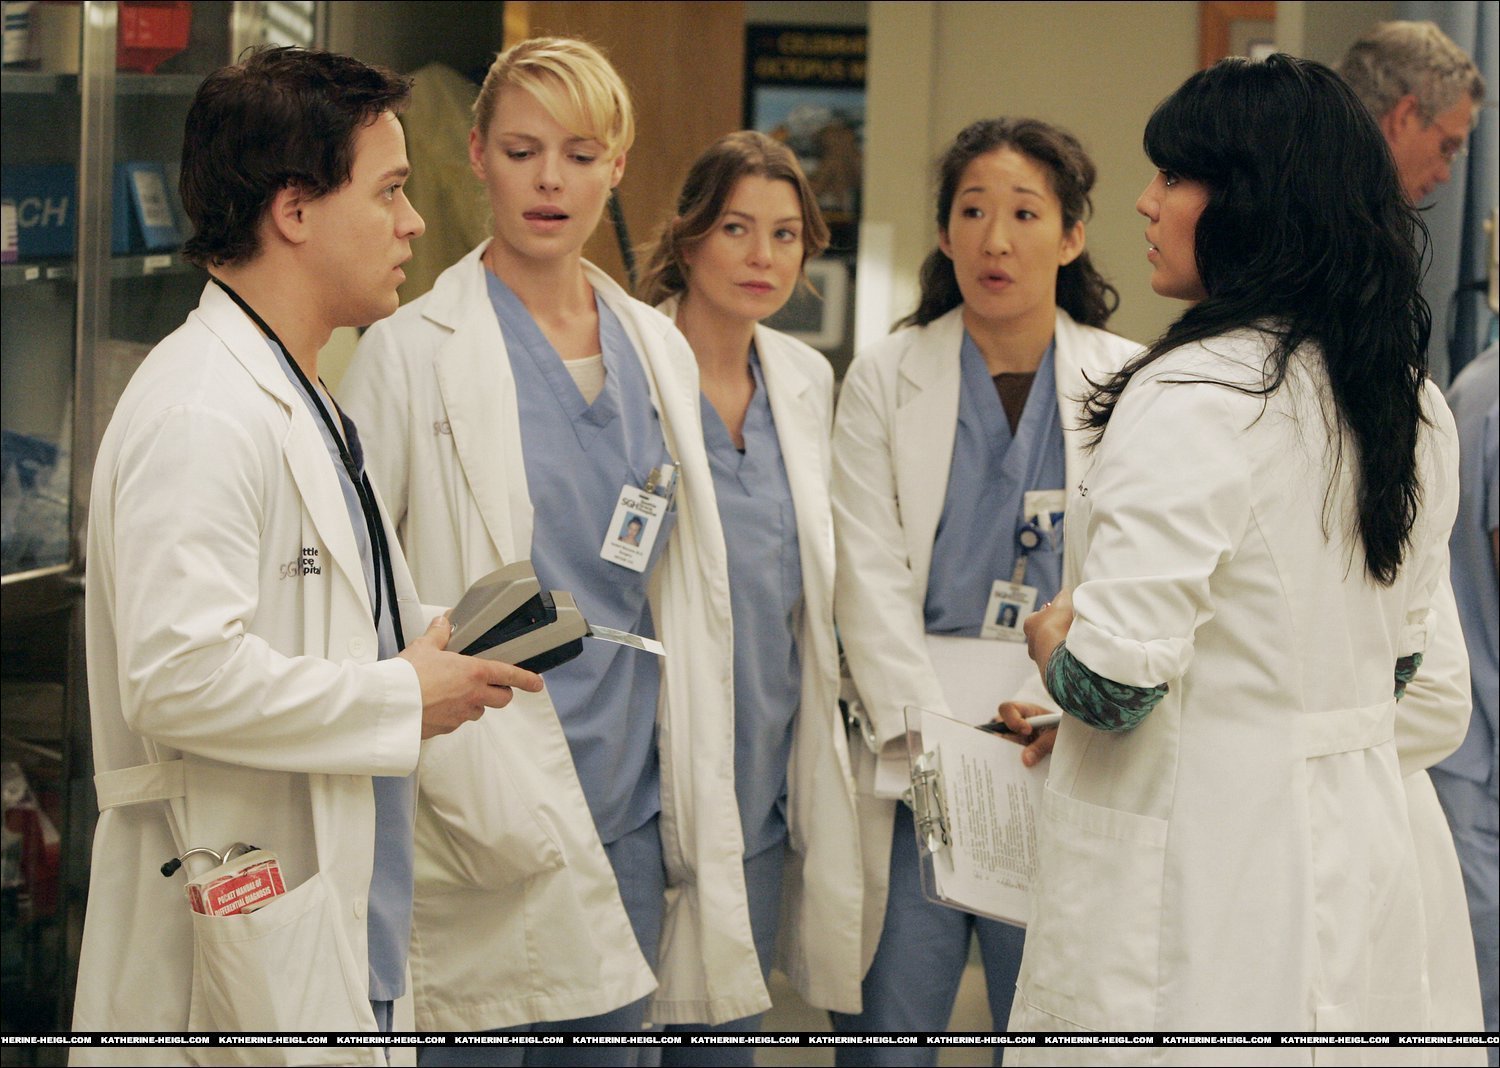 Greys Anatomy - Season 16 Watch Online Free1500 x 1068